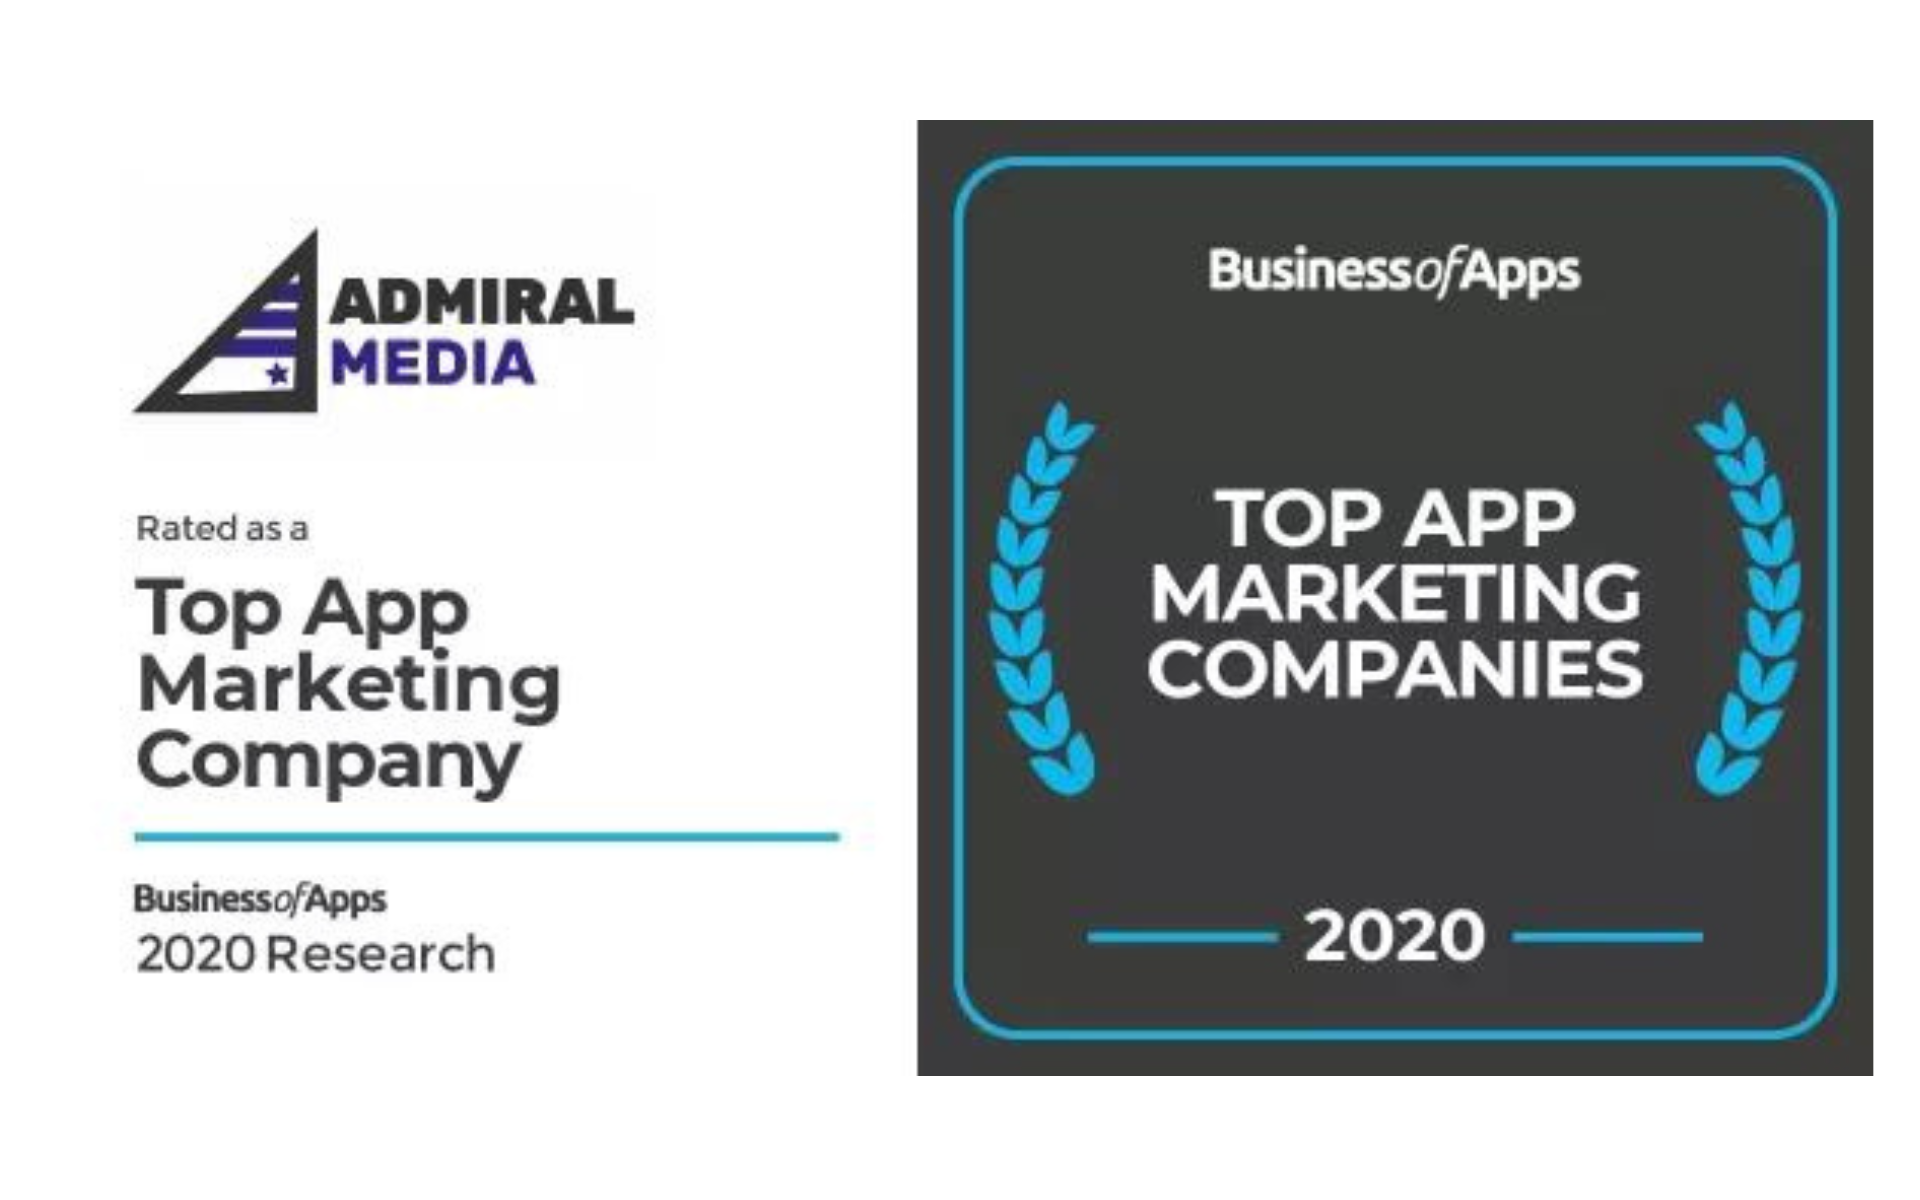 Top App Marketing Company